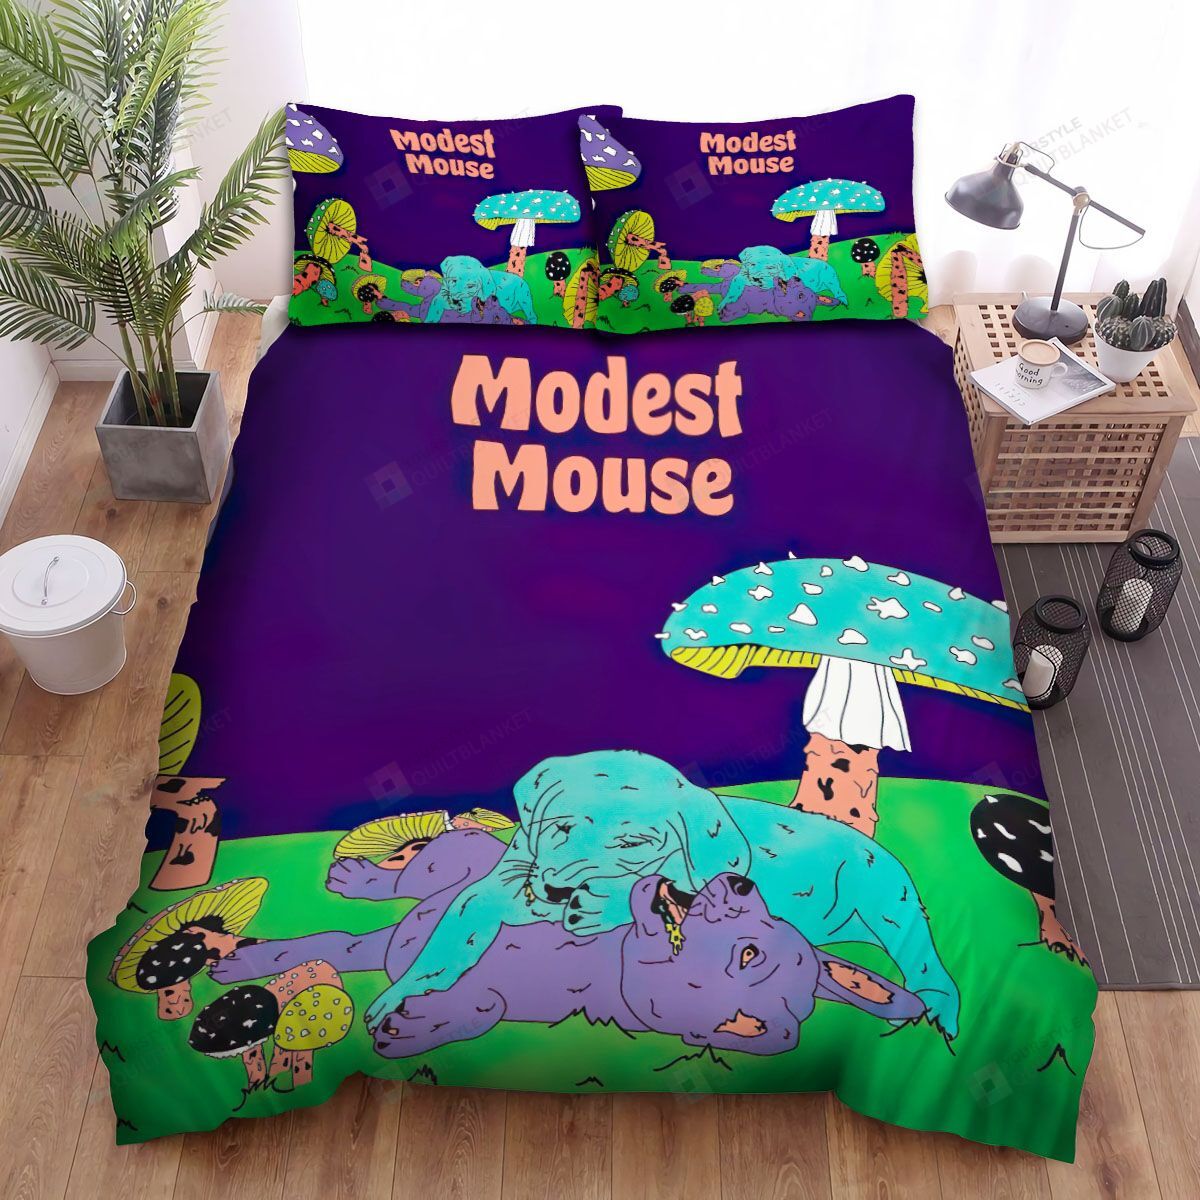 Modest Mouse Artwork Bed Sheets Spread Comforter Duvet Cover Bedding Sets